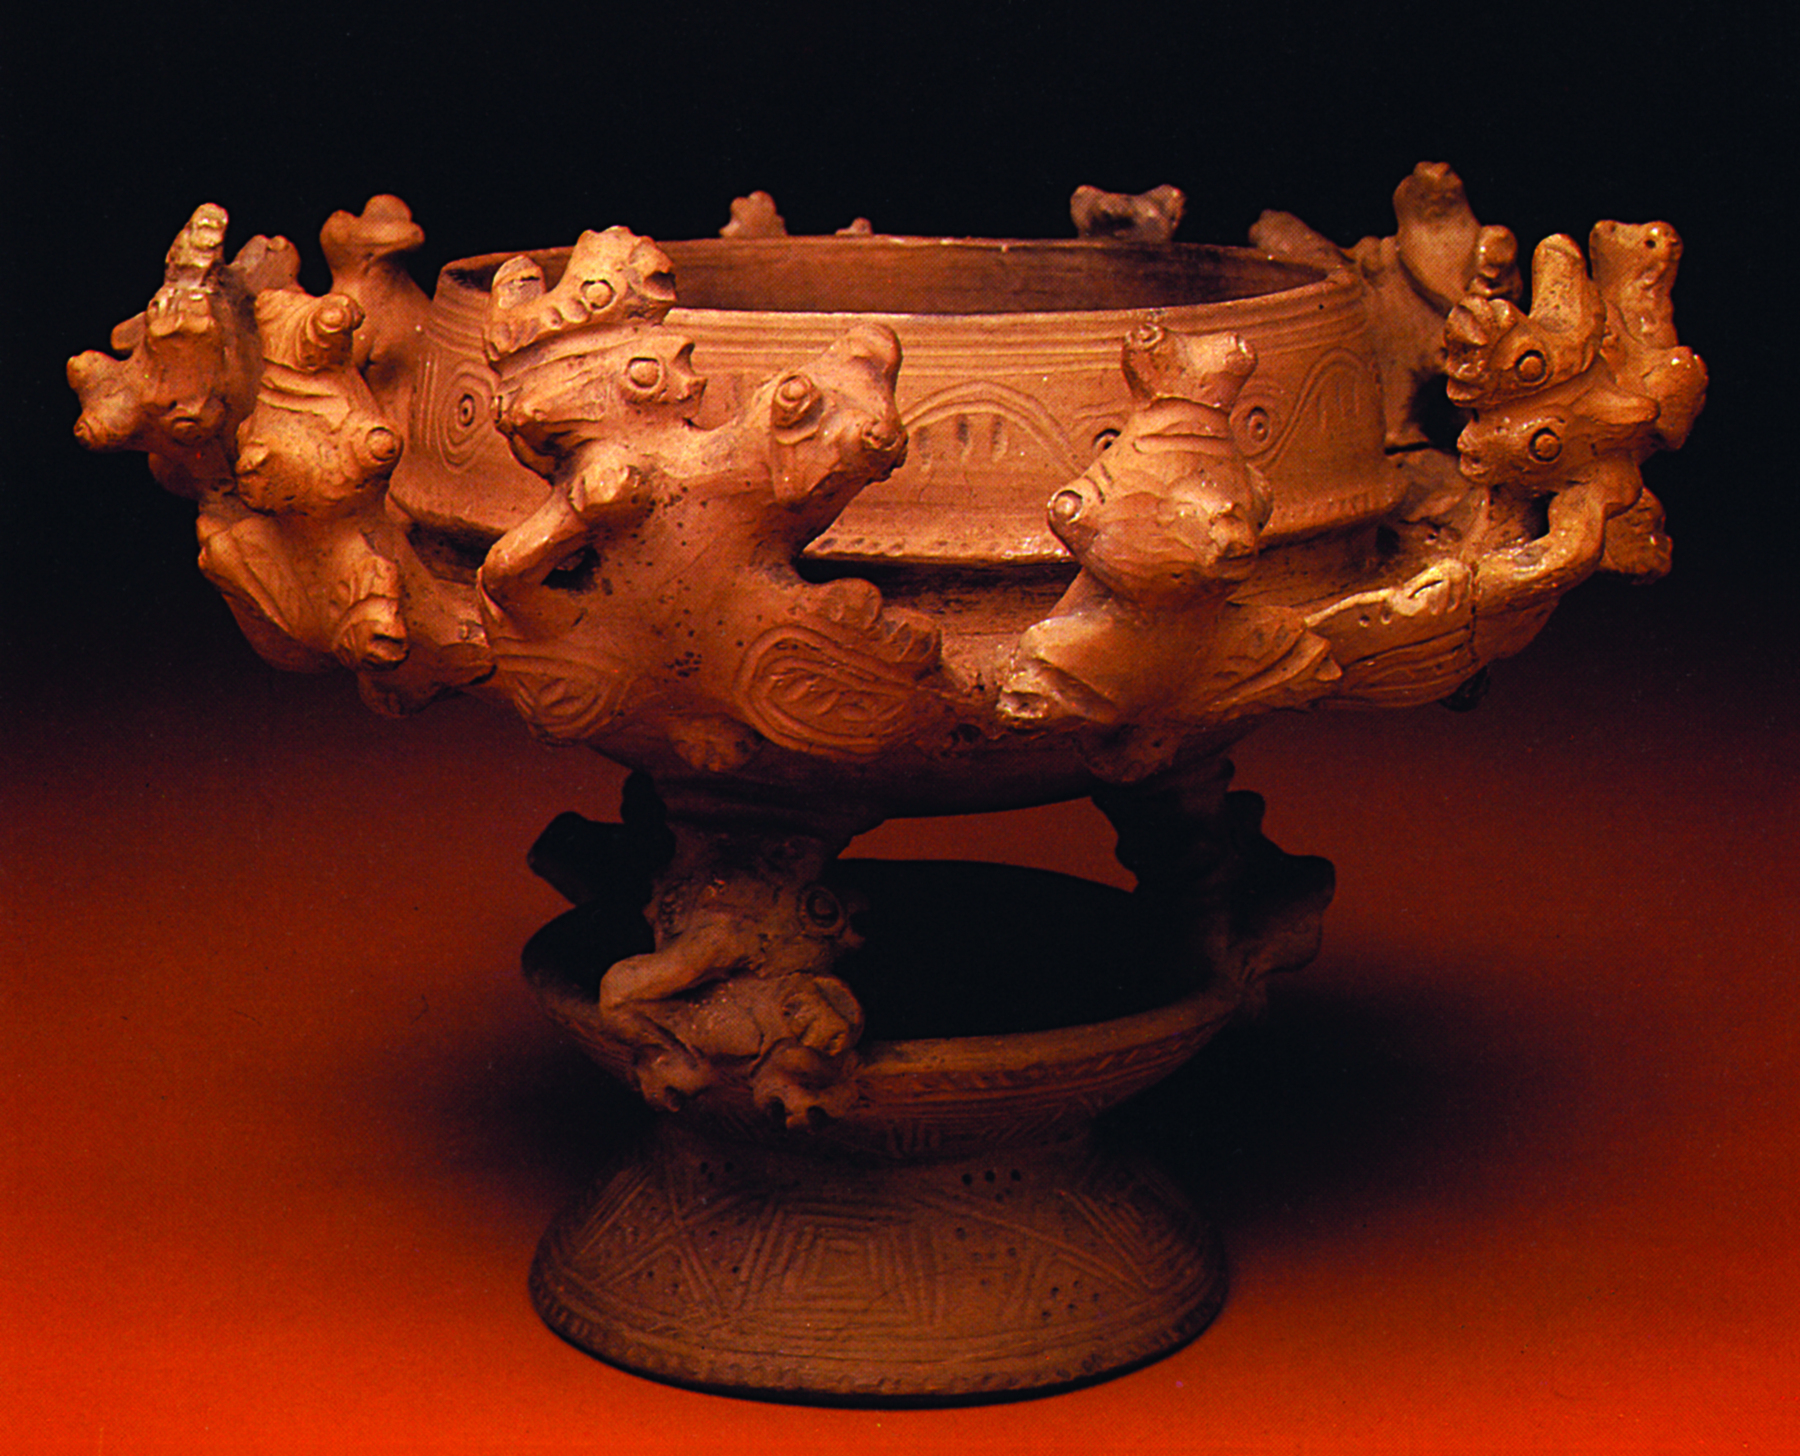 Cerâmica. Recipiente de formato circular, com cabeças de aves esculpidas nas laterais.